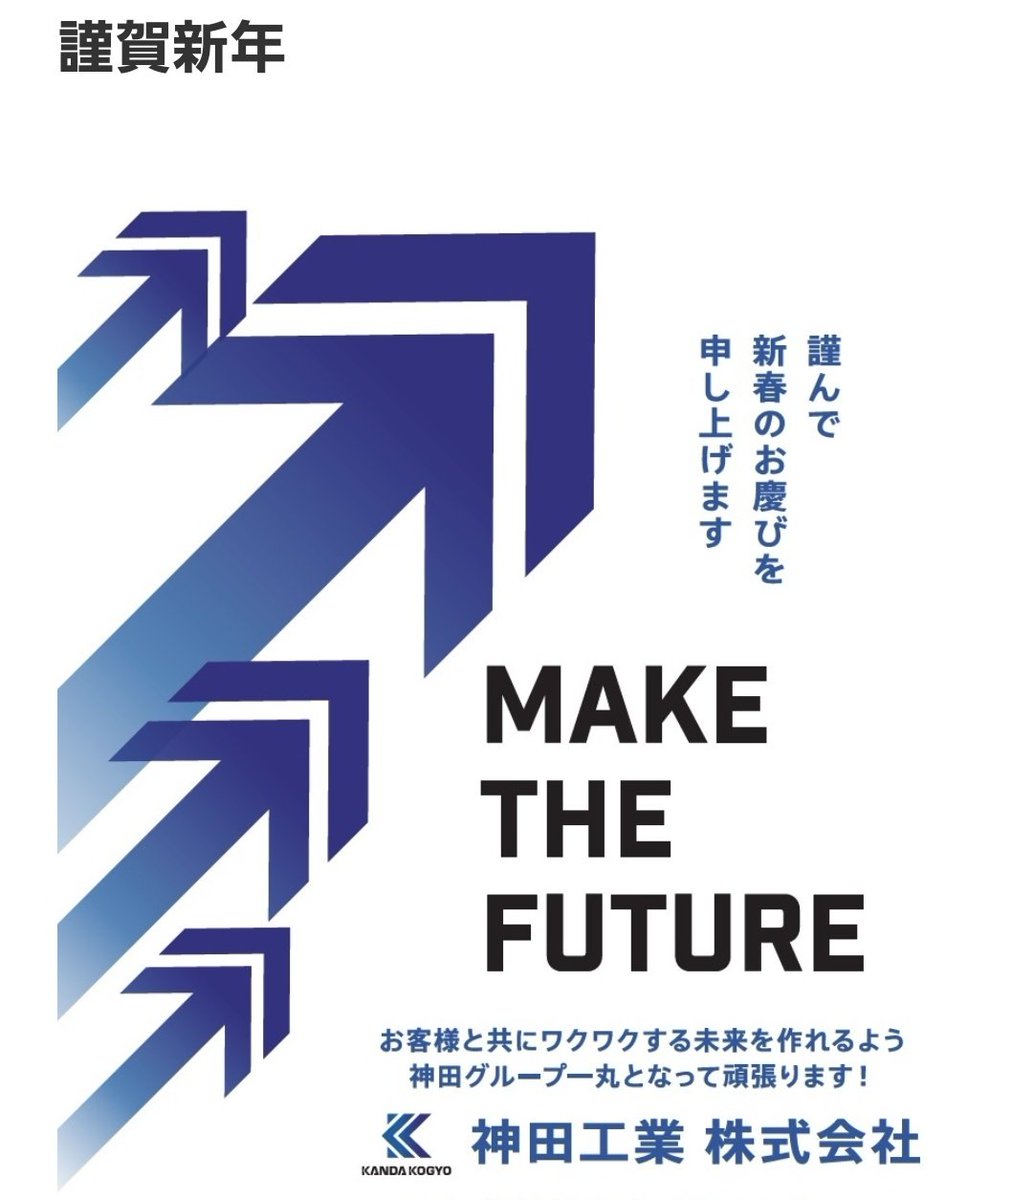 あけましておめでとうございます🎍

今年は卯年
うさぎのように飛躍する年になりますよう🐇
一日一日を積み重ねて参ります！

2023年も神田工業をよろしくお願い致します😊！
#謹賀新年
#企業公式が新年の挨拶を言い合う 
#うさぎ年
#makethefuture
#空中ディスプレイ
kanda-kogyo.co.jp/blog/?p=5302